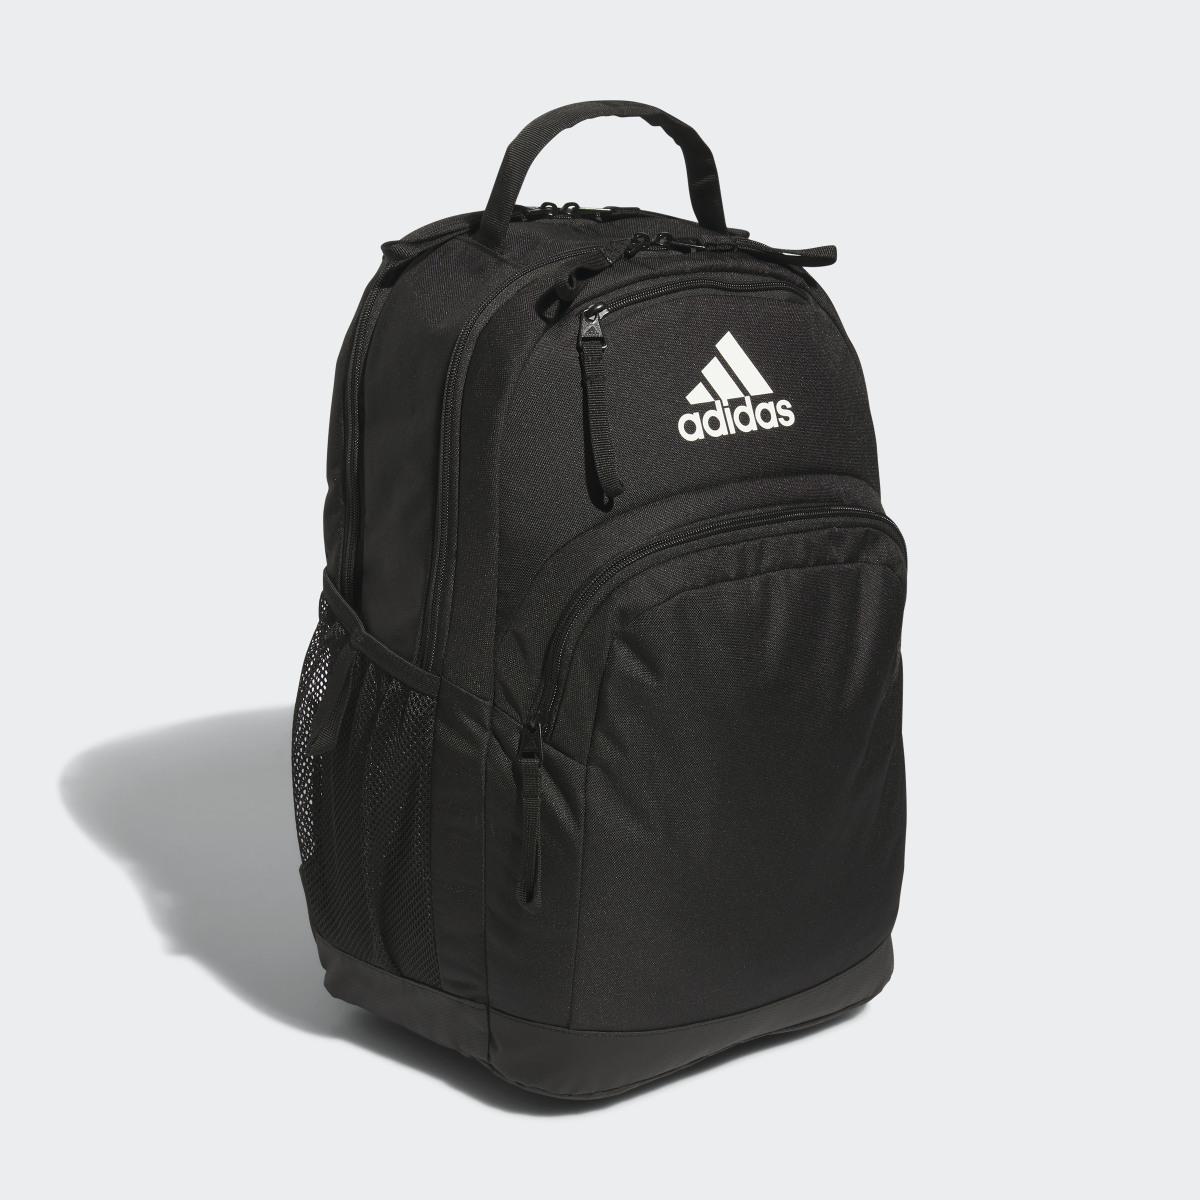 Adidas Adaptive Backpack. 4